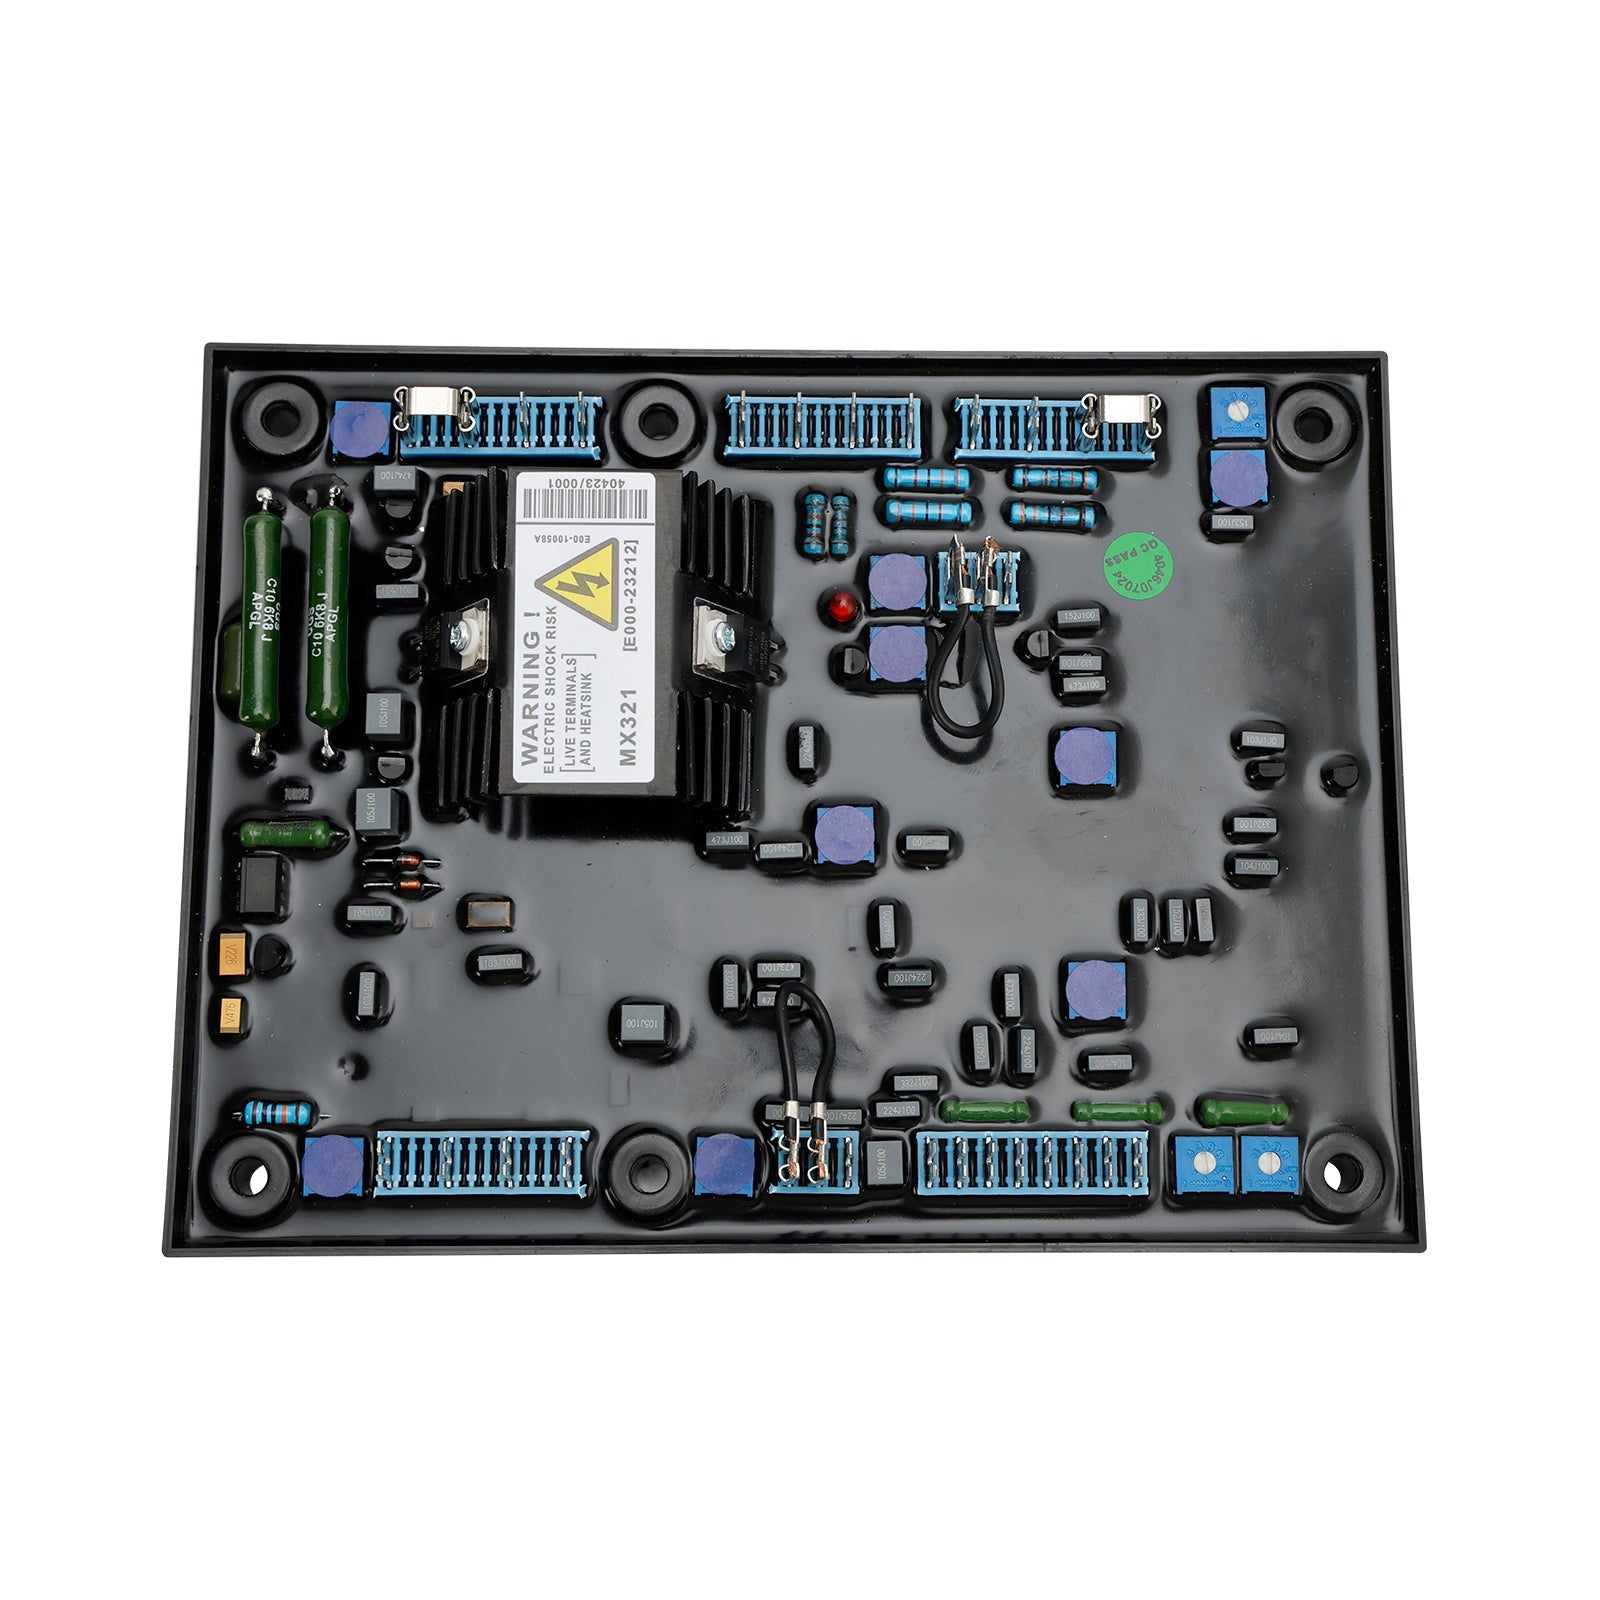 Reemplazo automático del regulador de voltaje AVR MX321 para generador